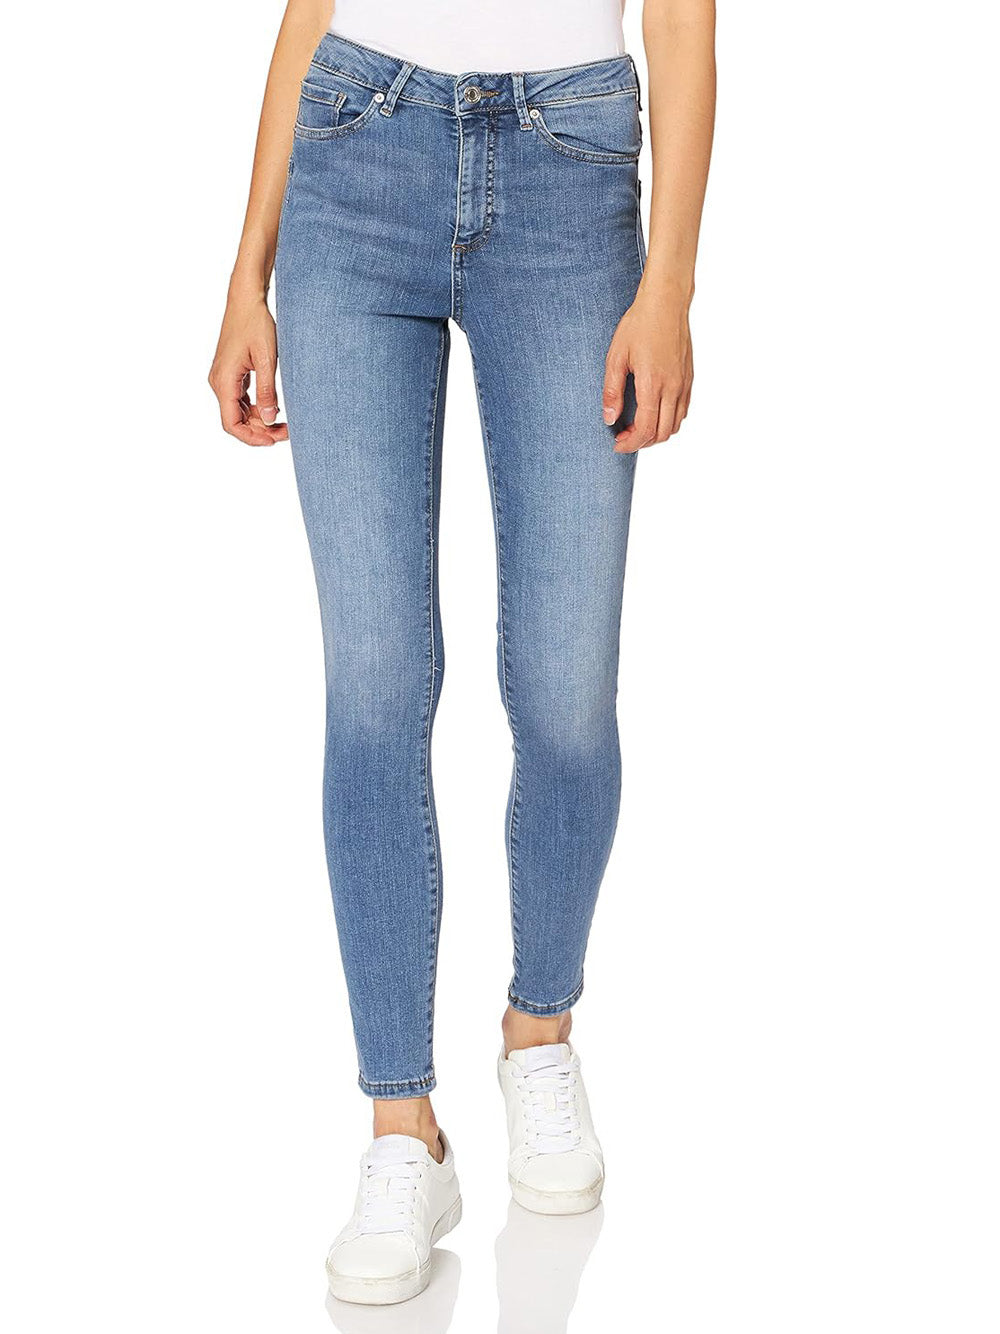 VERO MODA Jeans Donna - Blu modello 10193330